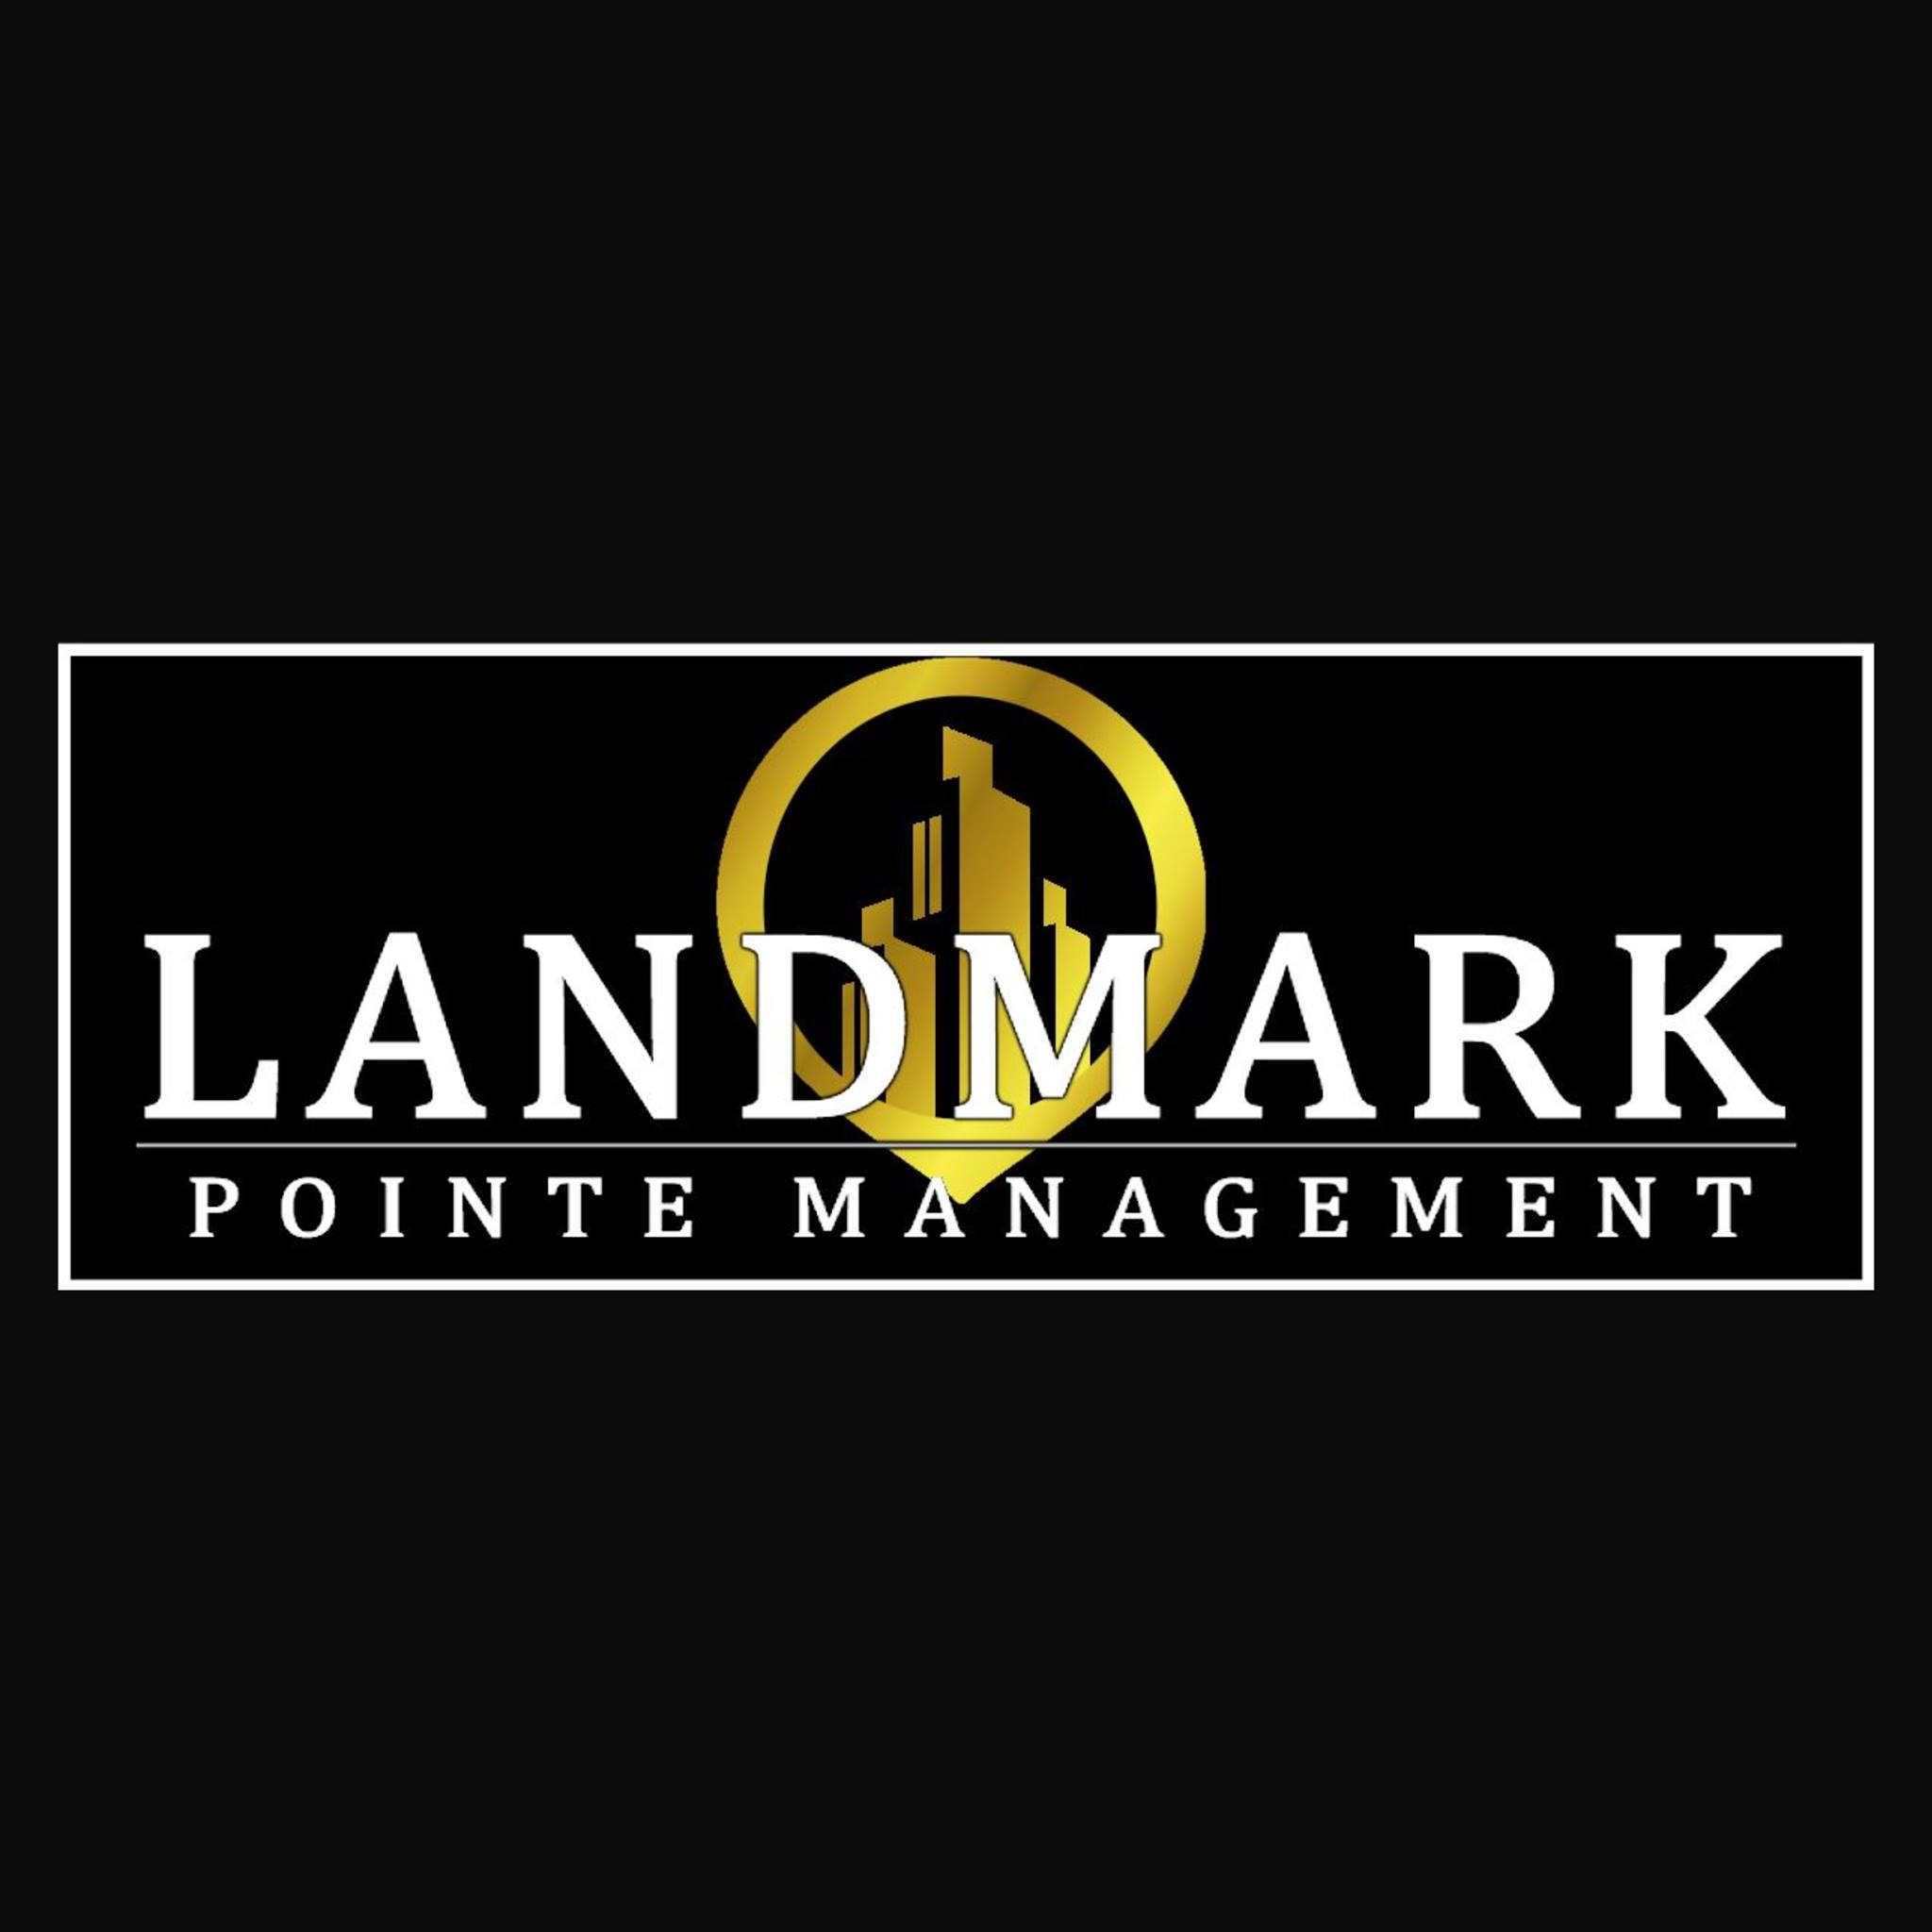 Landmark Pointe Management